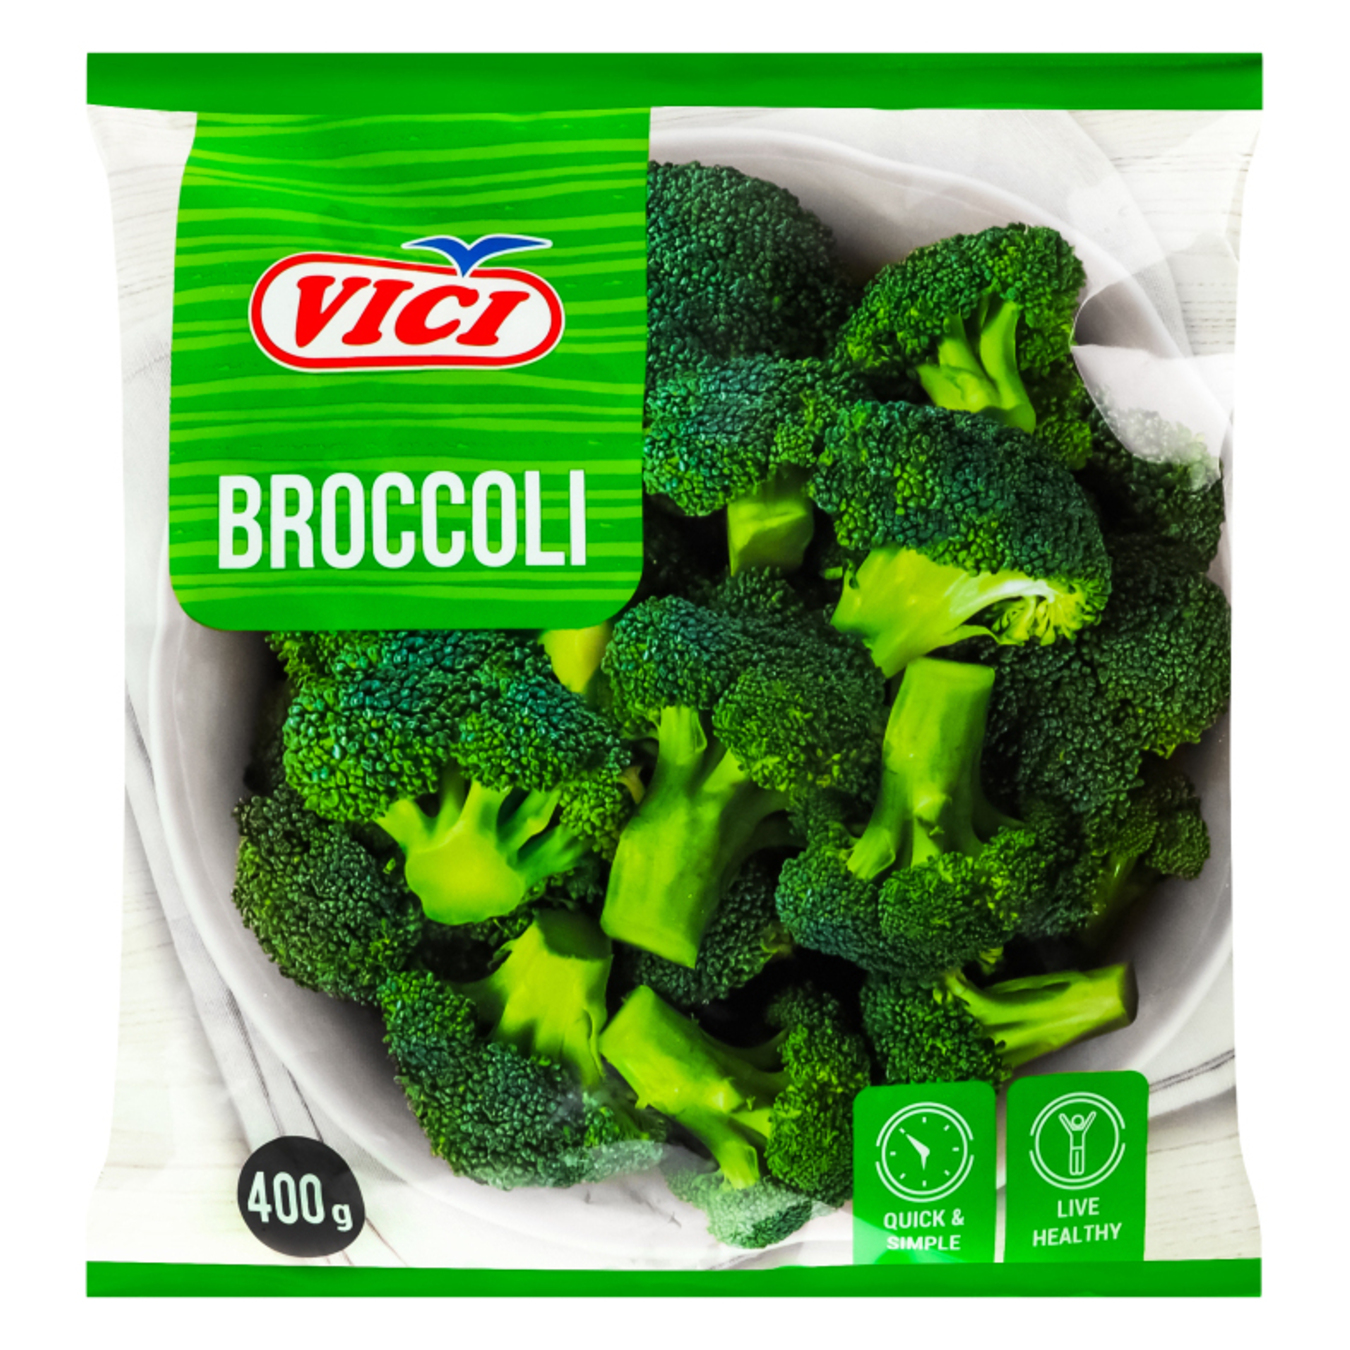 VIČI Frozen Broccoli 400g